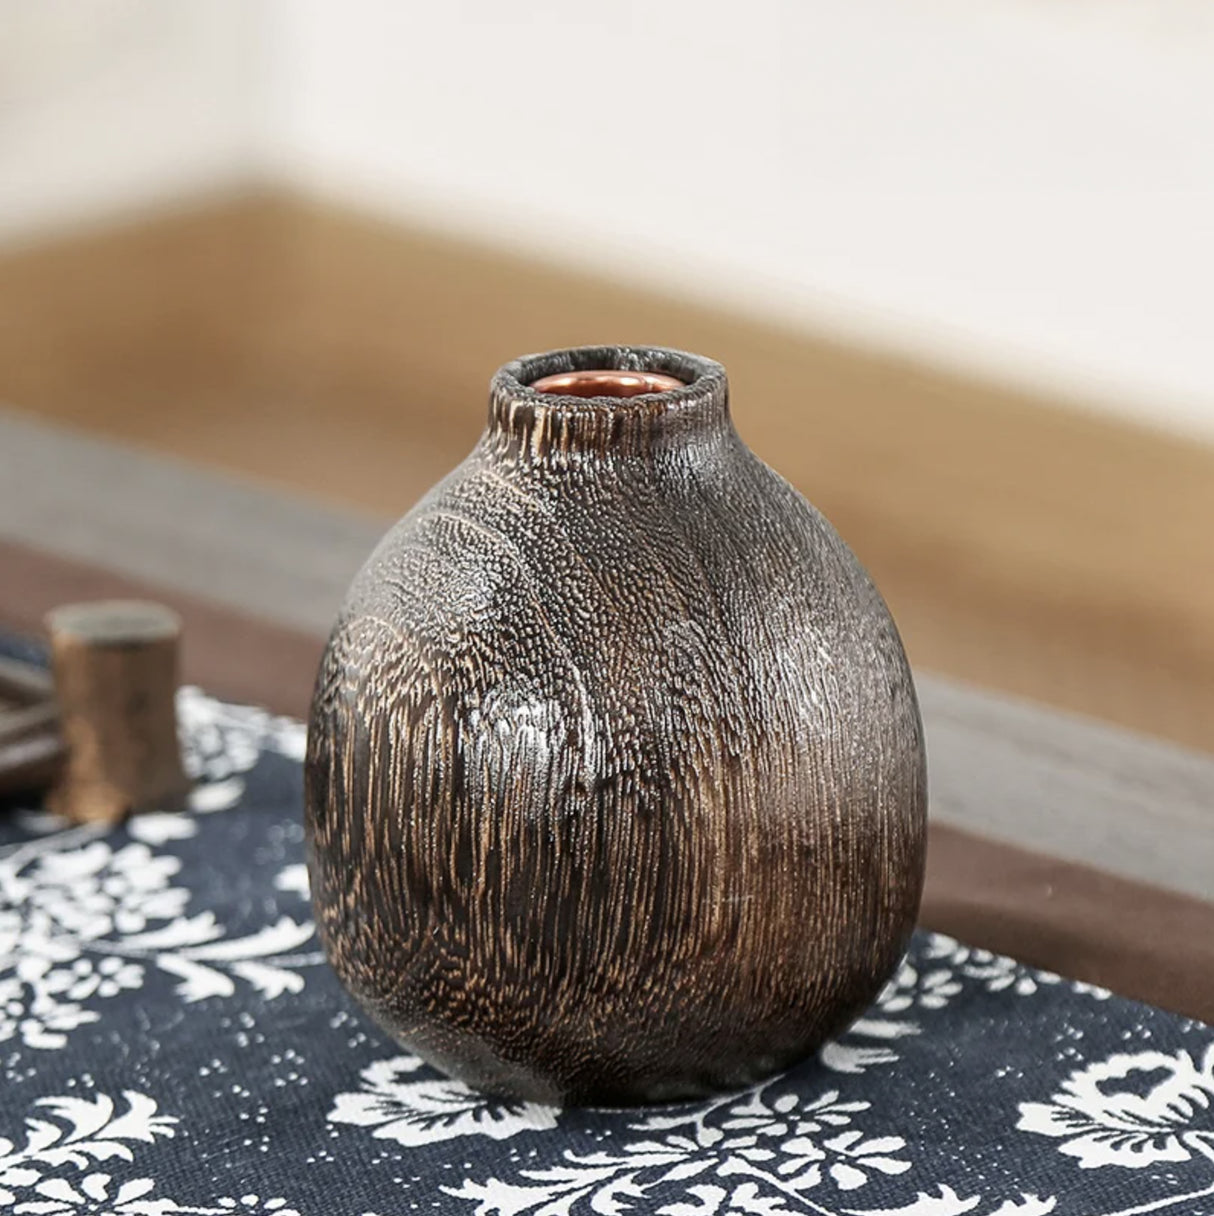 Vase japonais en bois